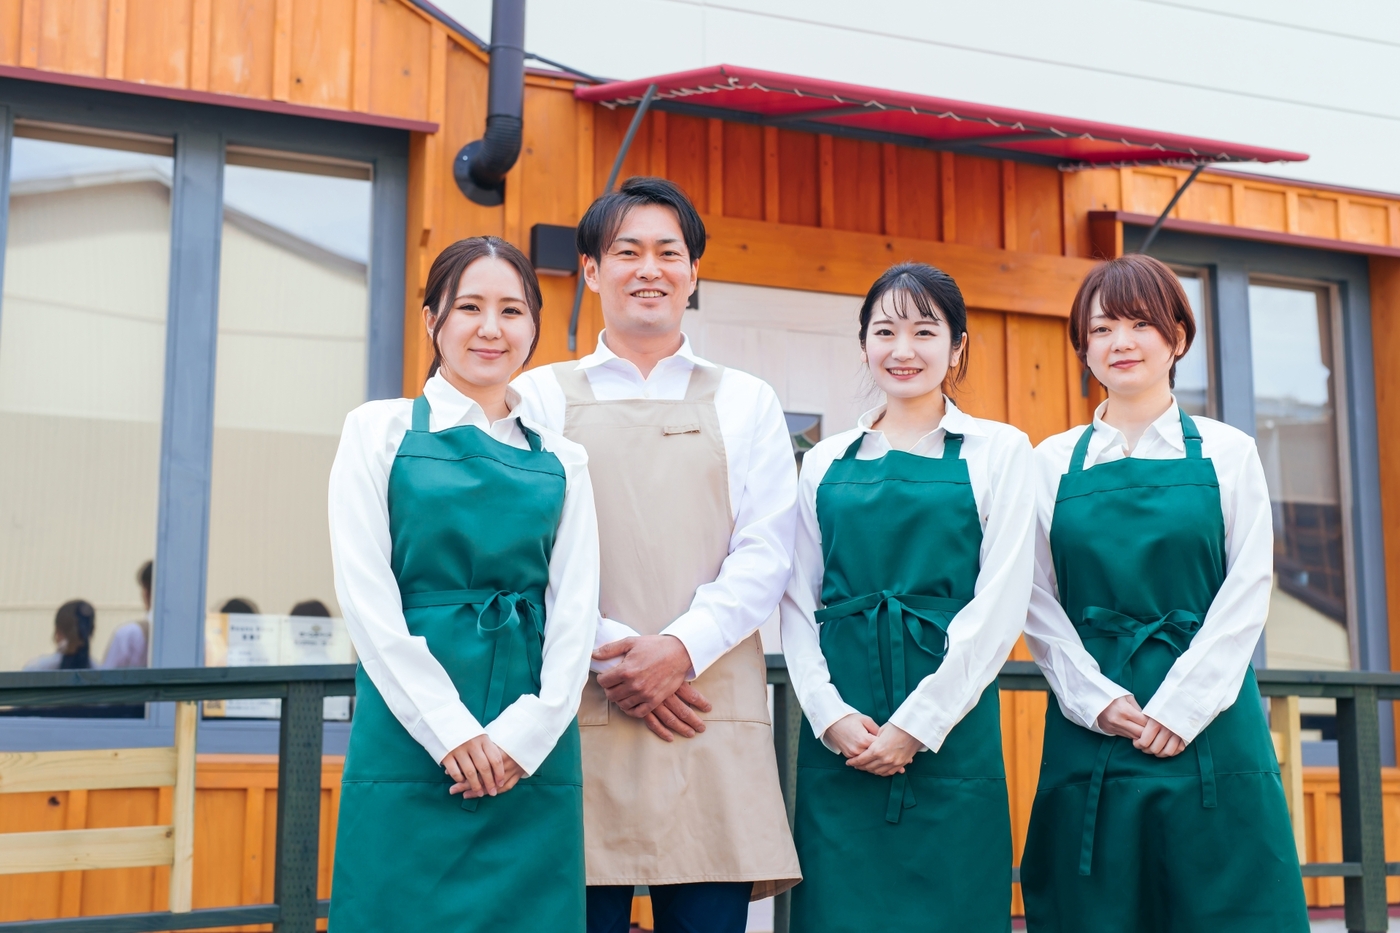 お店の前に並ぶ白いシャツを着て緑のエプロンを着用した3人の若い女性スタッフと、白いシャツを着てベージュのエプロンを身に着けた1人の男性スタッフ